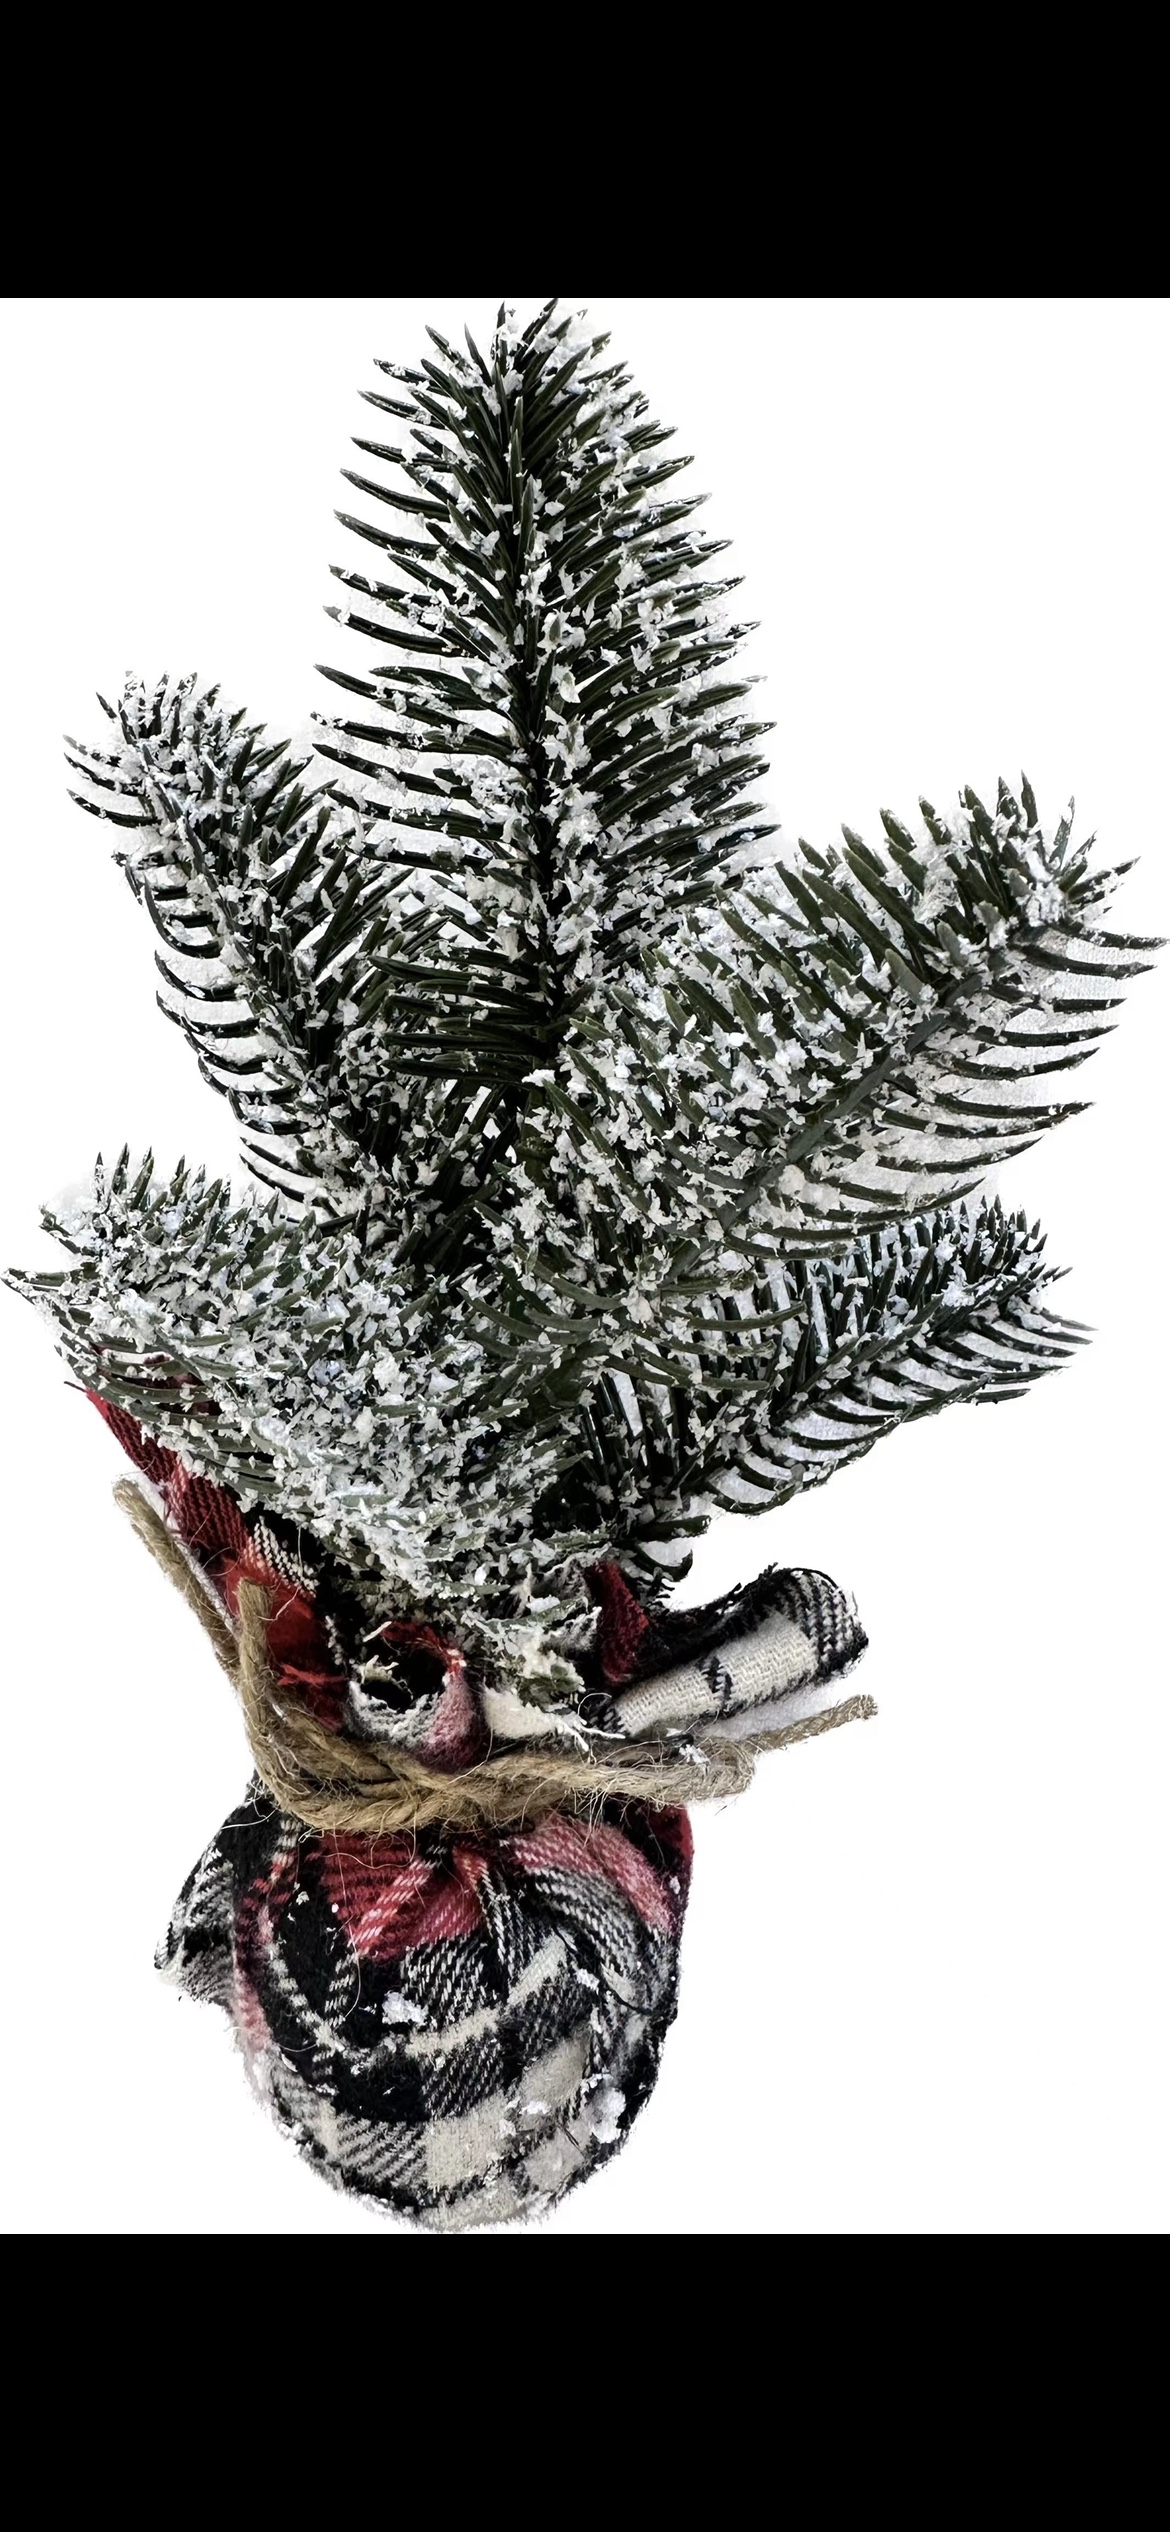 PVC圣诞树 高品质节日礼品 耐用环保圣诞装饰品 附赠圣诞树发夹 美观实用